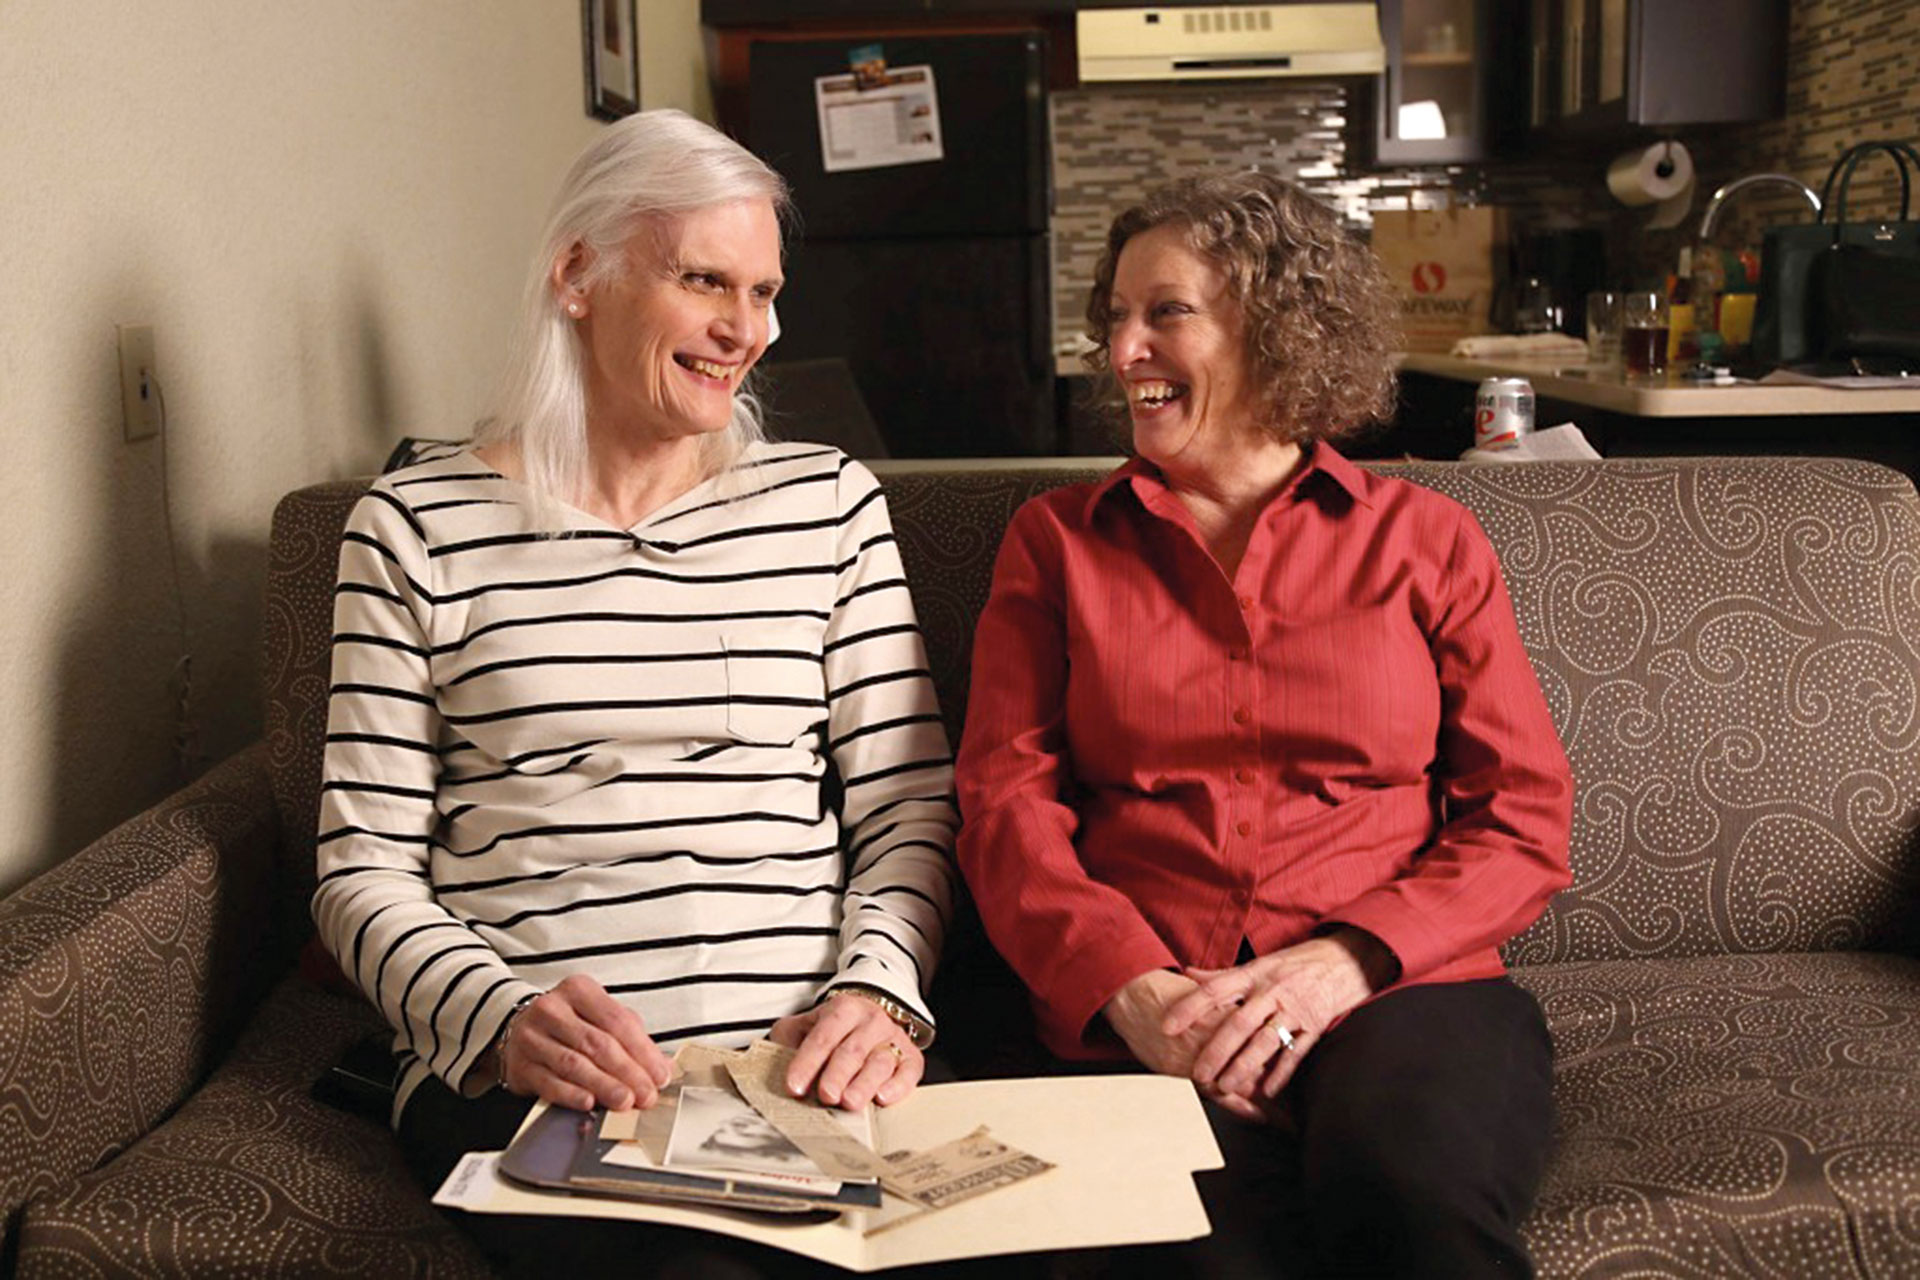 Después de 44 años de matrimonio, Linda aceptó que su marido, Bill, se transformara en una mujer.